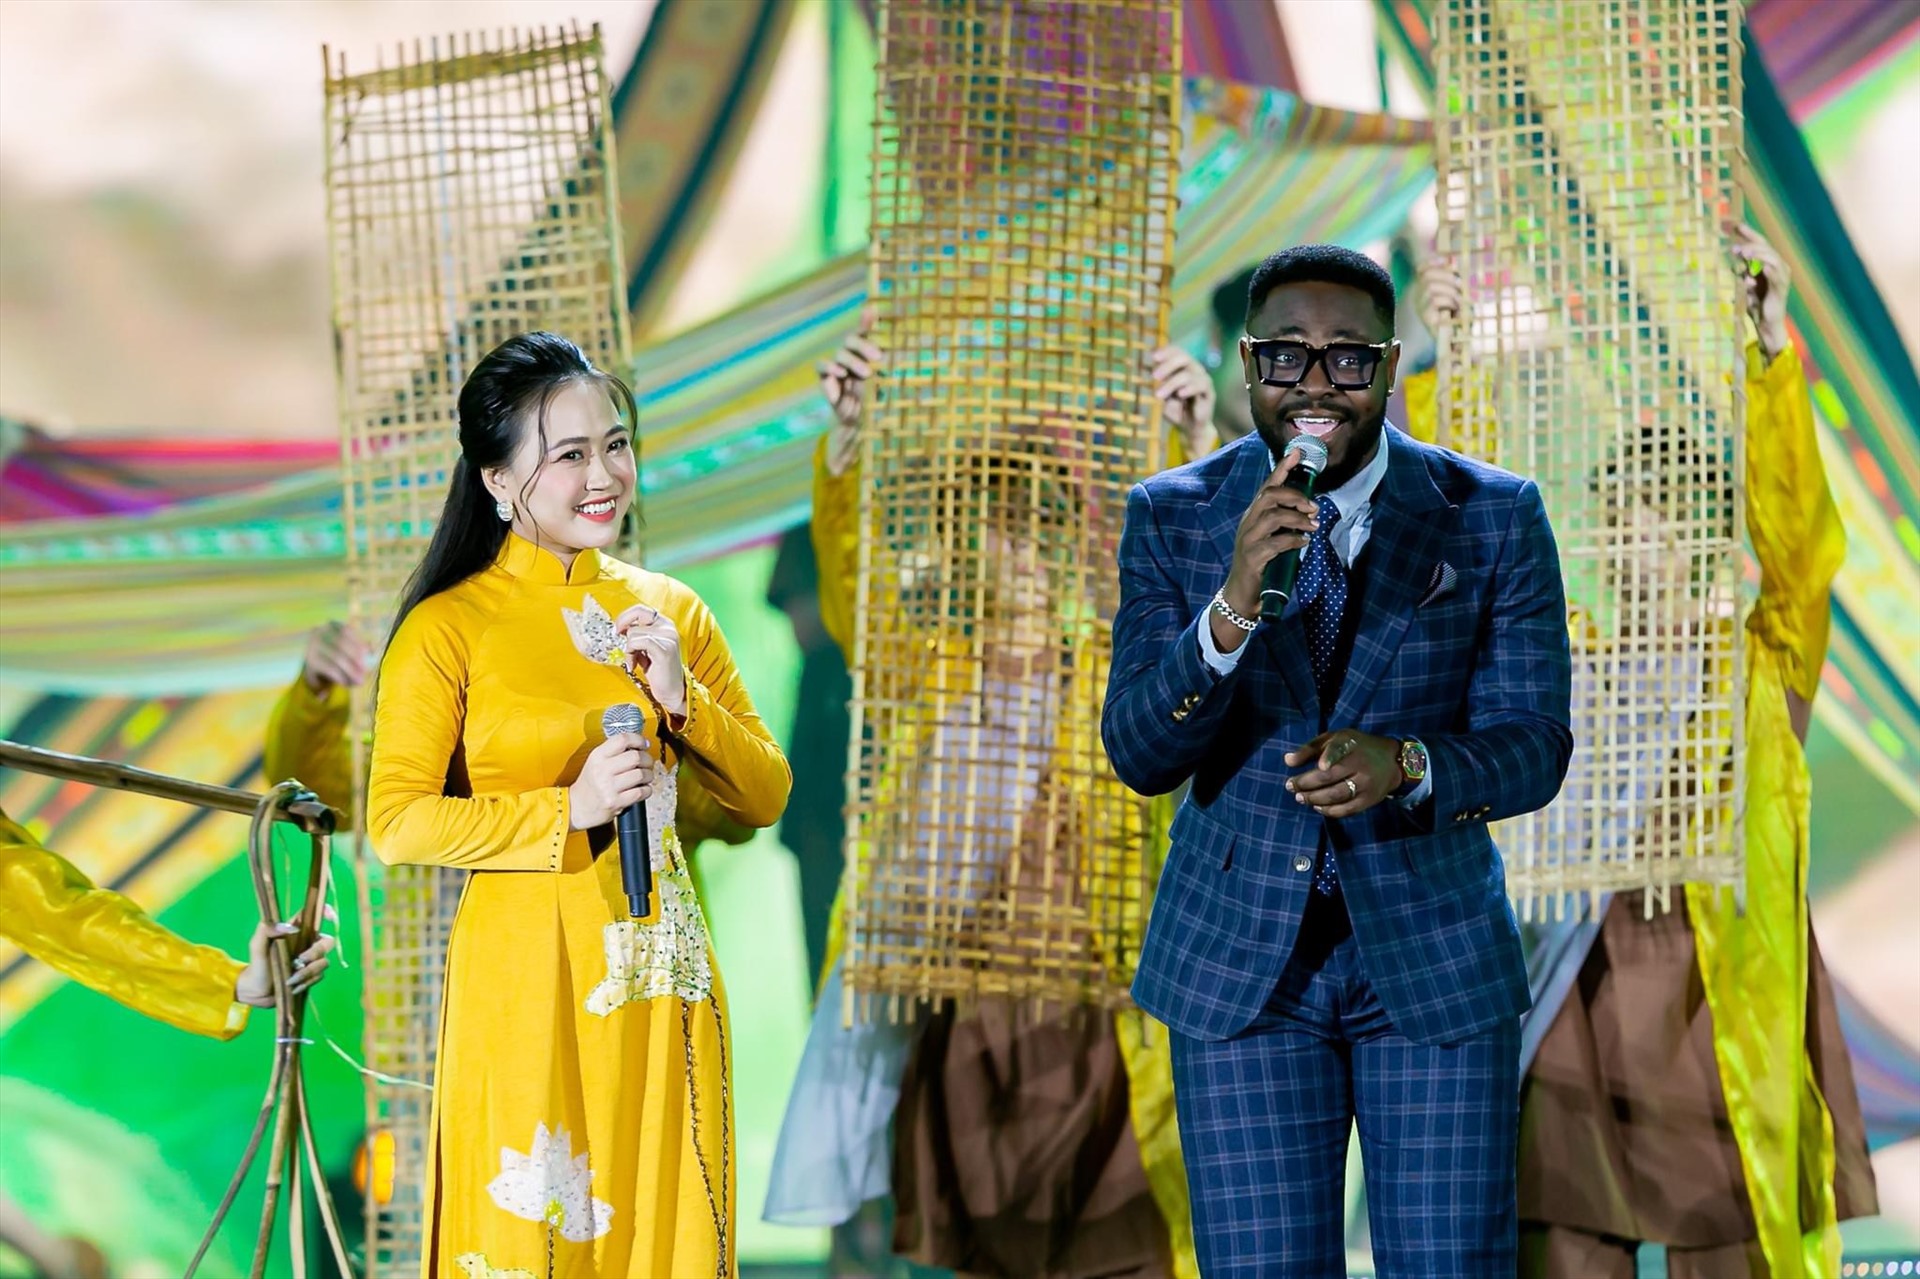 Đặc biệt, chương trình còn có sự góp mặt của một số nghệ sĩ nước ngoài. Trong ảnh: Ca sĩ Cee Jay (Nigeria) cùng các ca sĩ Lê Thanh Phong, Phương Thanh biểu diễn ca khúc “Ai vô xứ Nghệ“. Ảnh: Quỳnh Trang